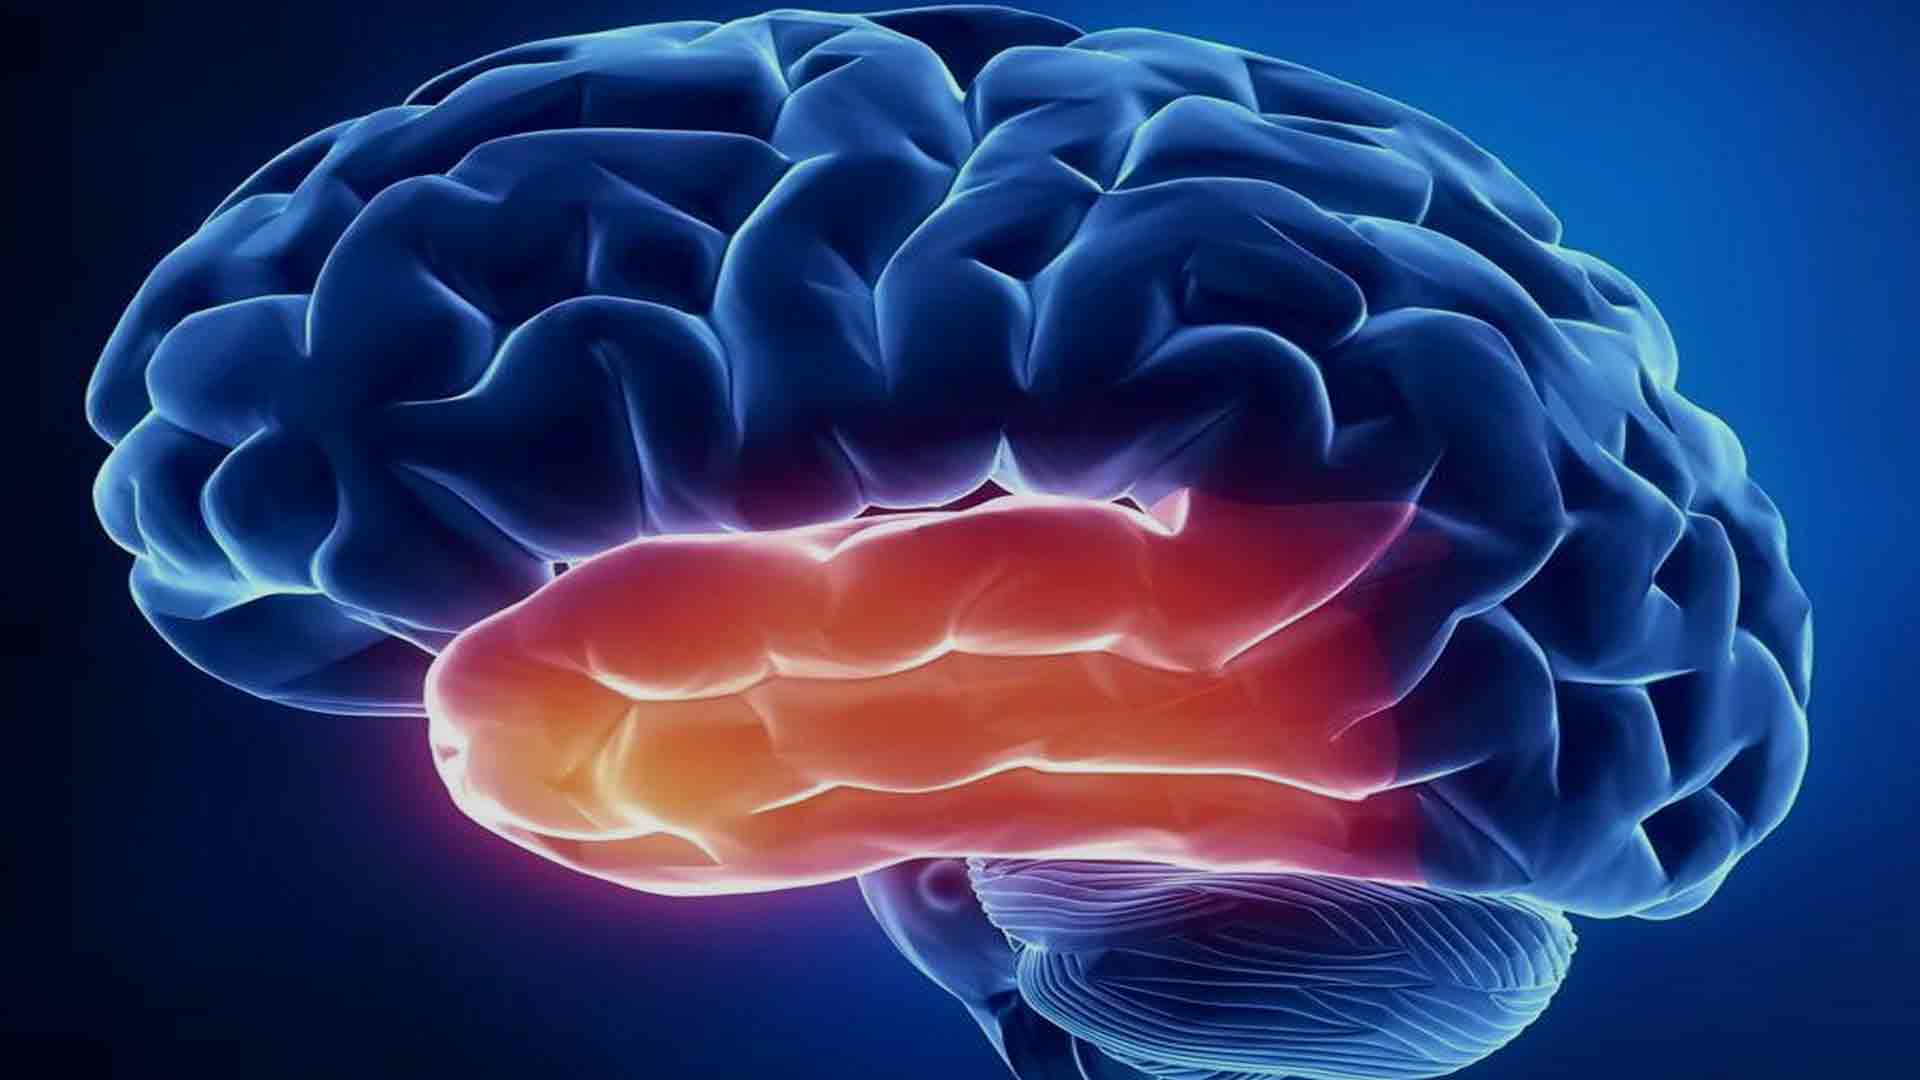 Tnt for the brain. Работоспособность мозга. Перезагрузка мозга. Головной мозг и алкоголь.